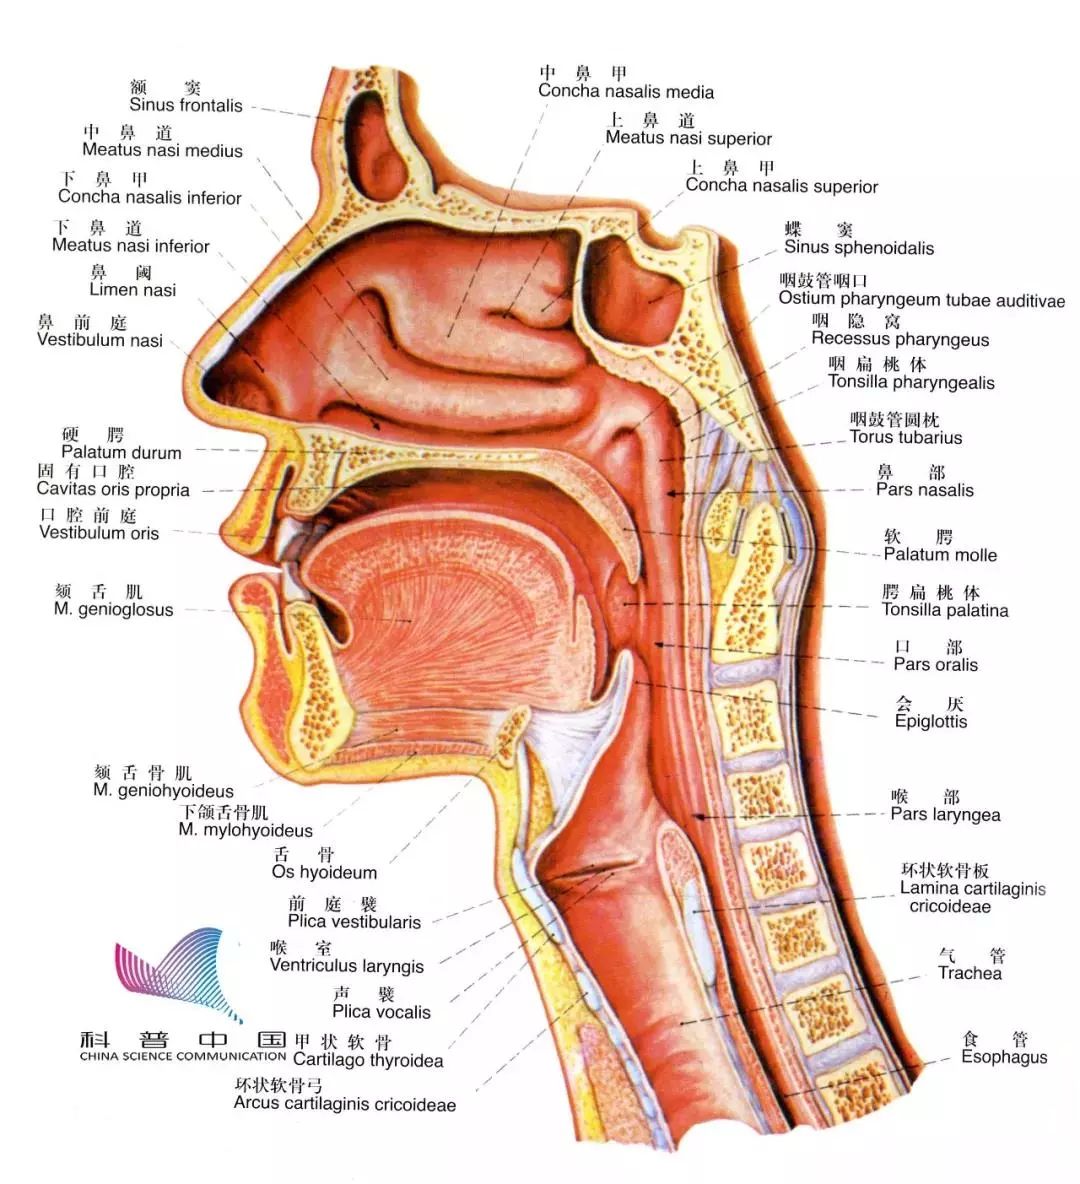 按解剖学上的分类,鼻部应该包括外鼻,鼻腔和鼻窦